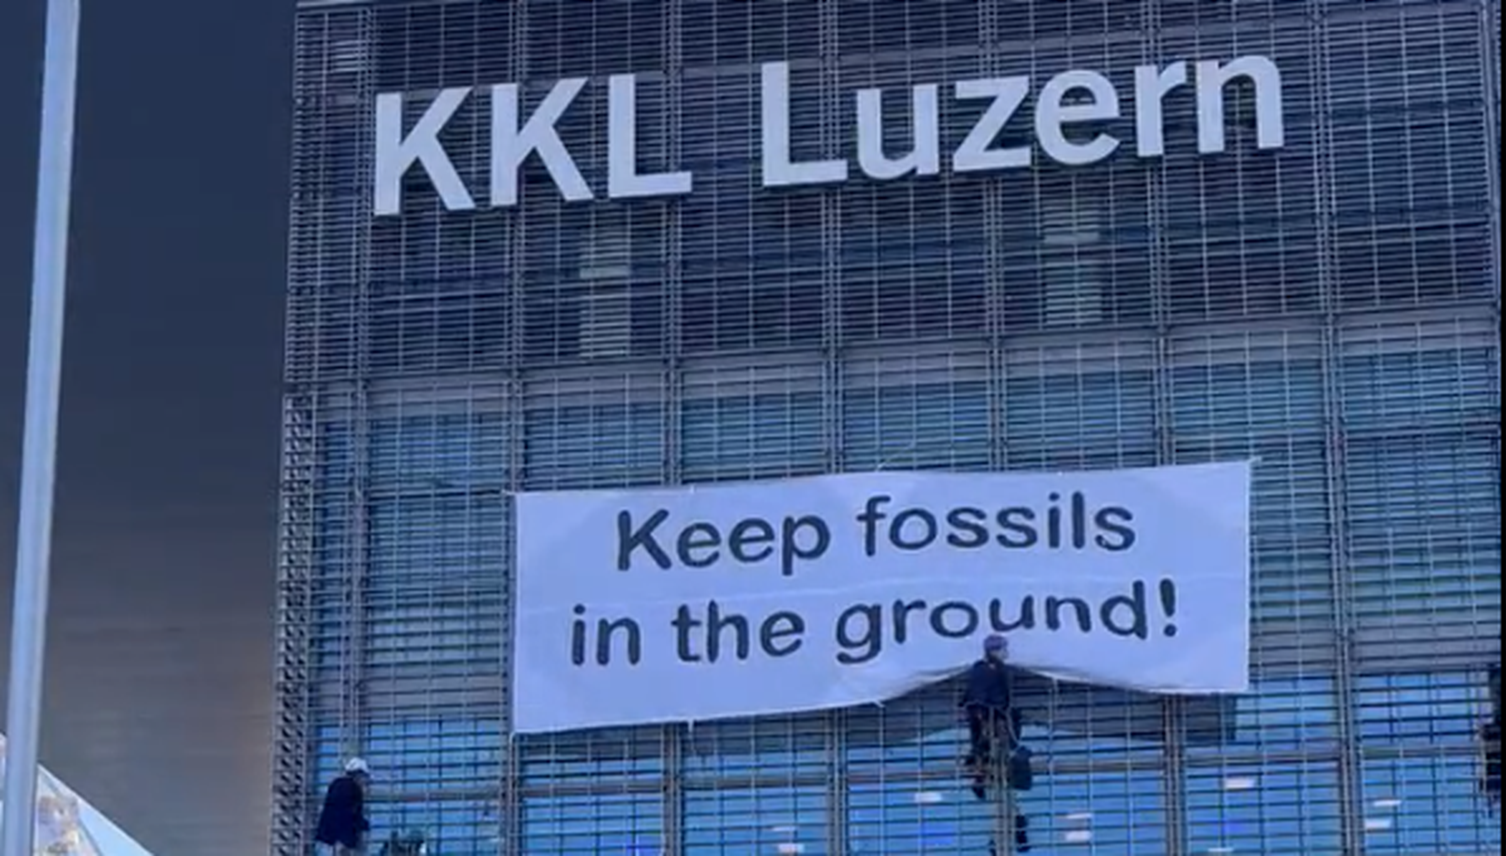 Luzern: Regierung lehnt Strategie für Veranstaltungen ab